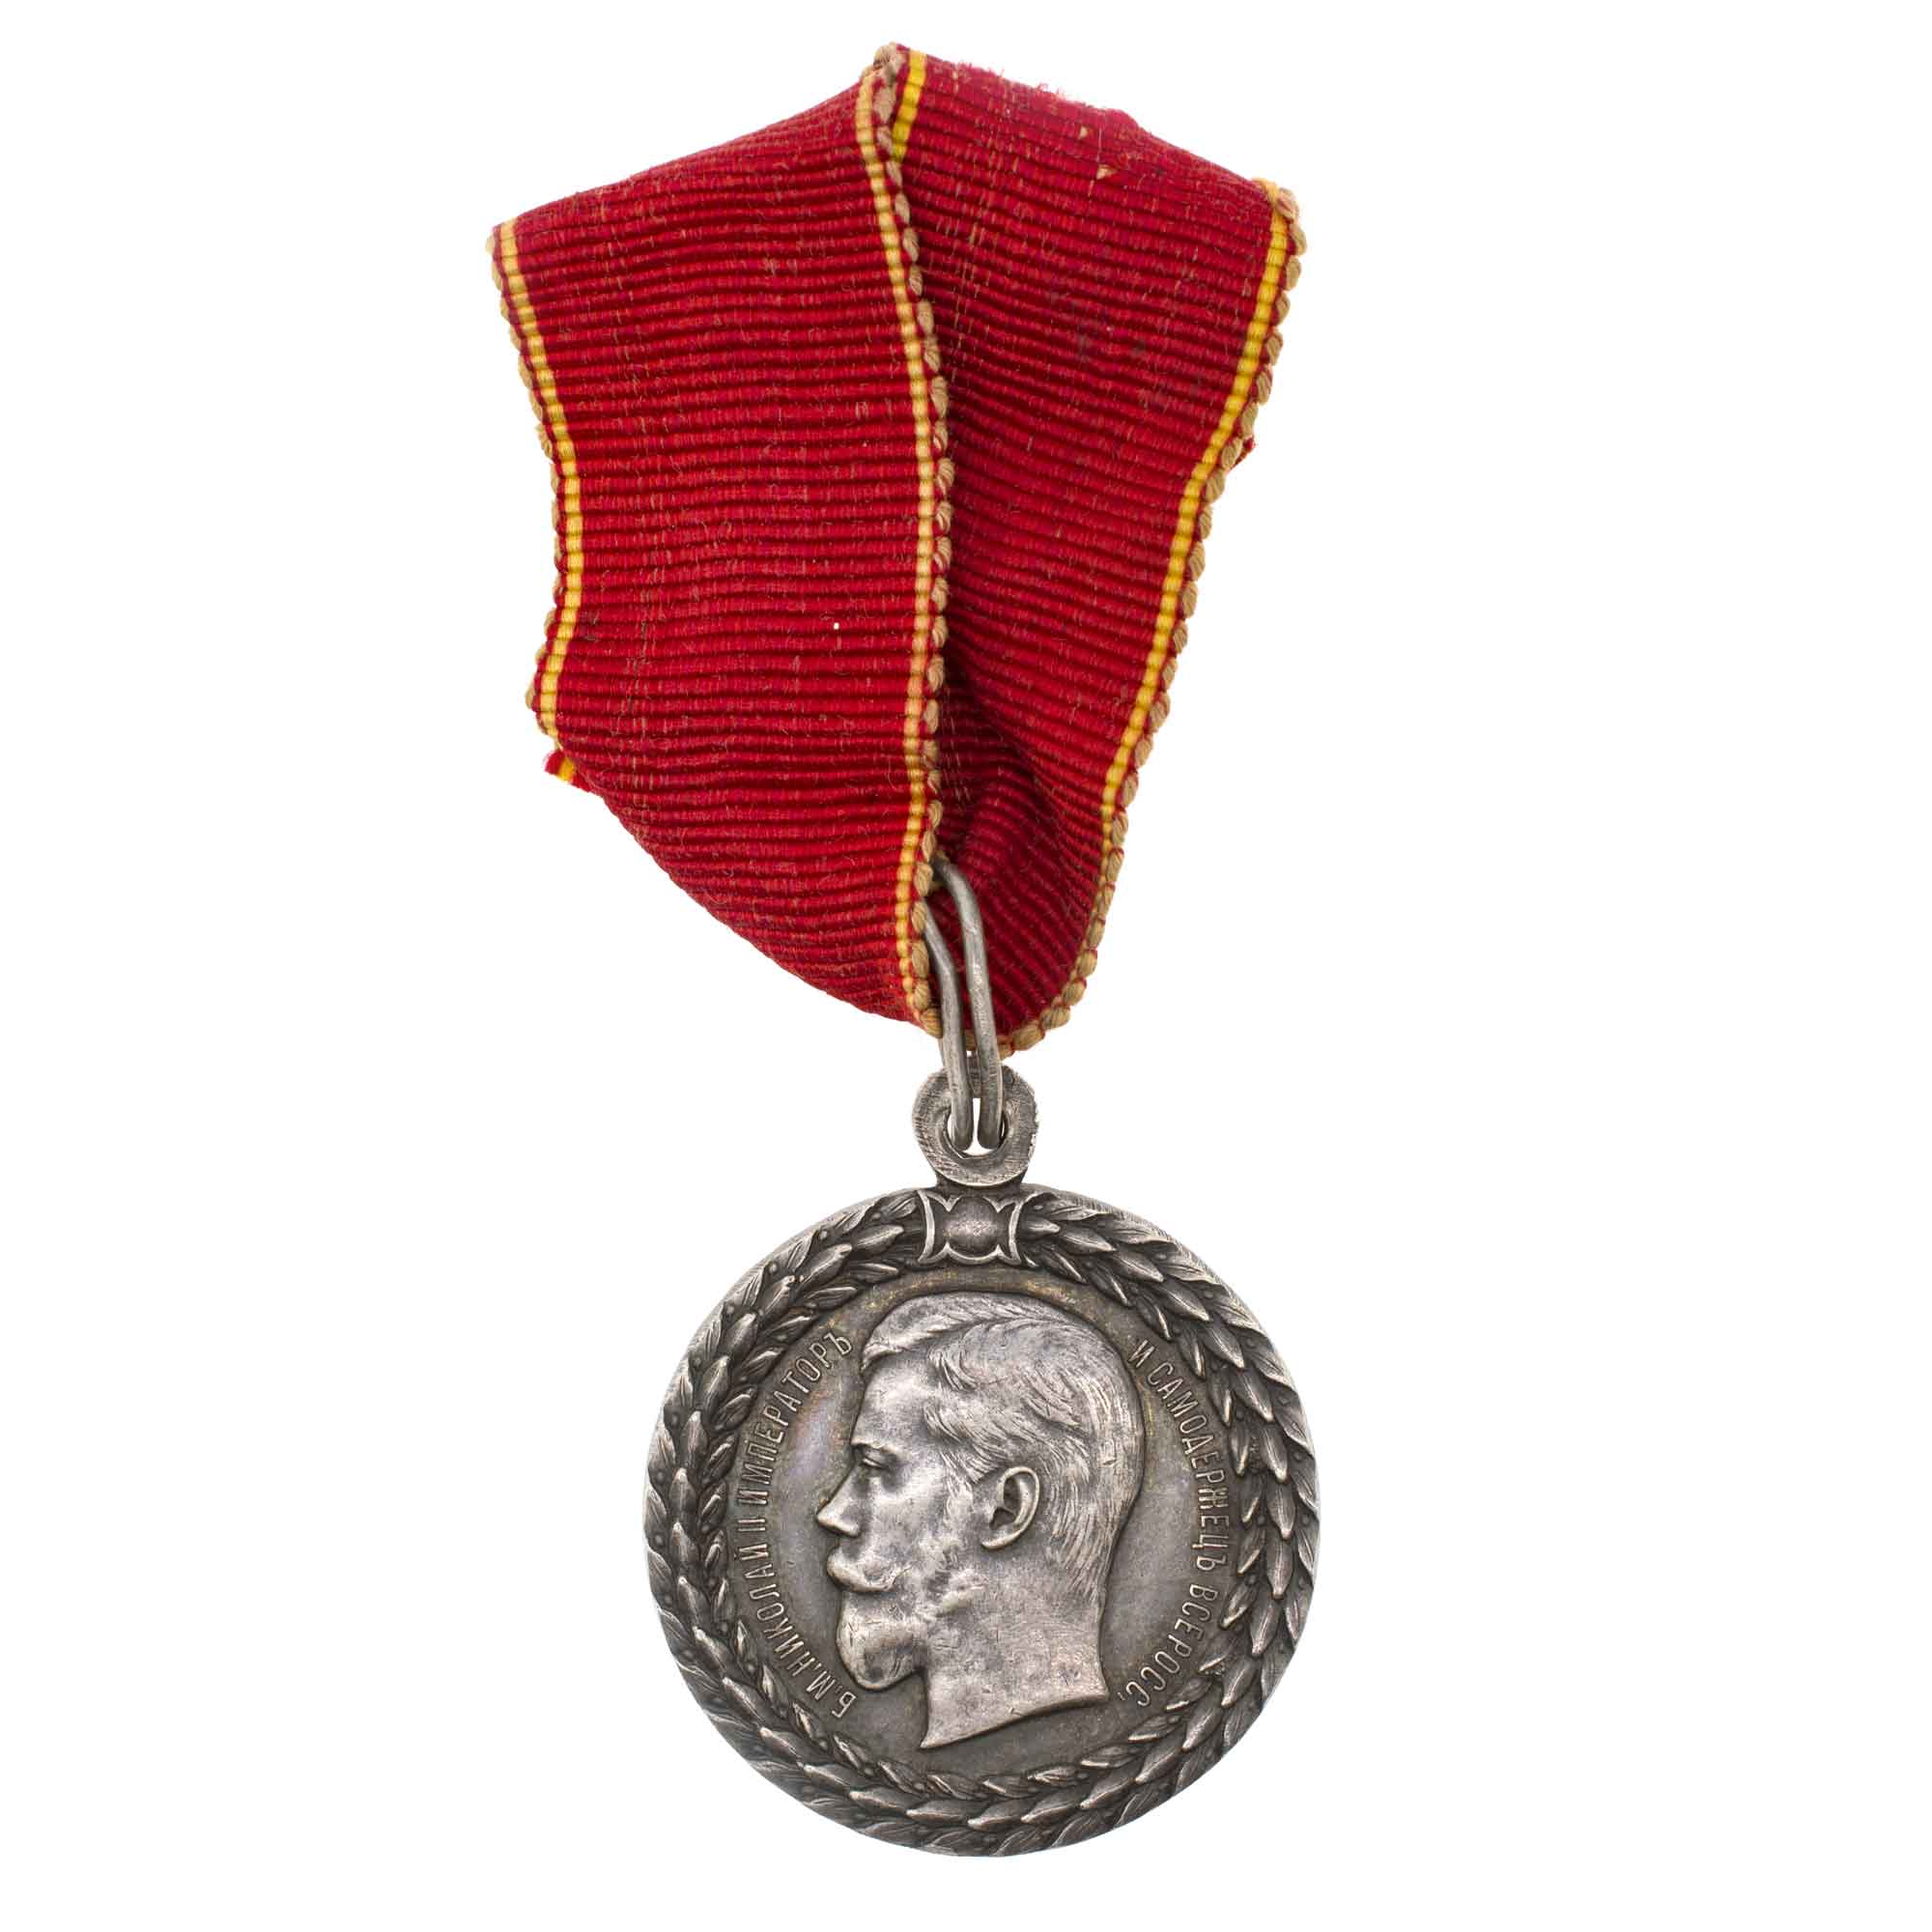 Медаль "За беспорочную службу в полиции" с портретом Императора Николая II на ленте ордена Св. Анны.